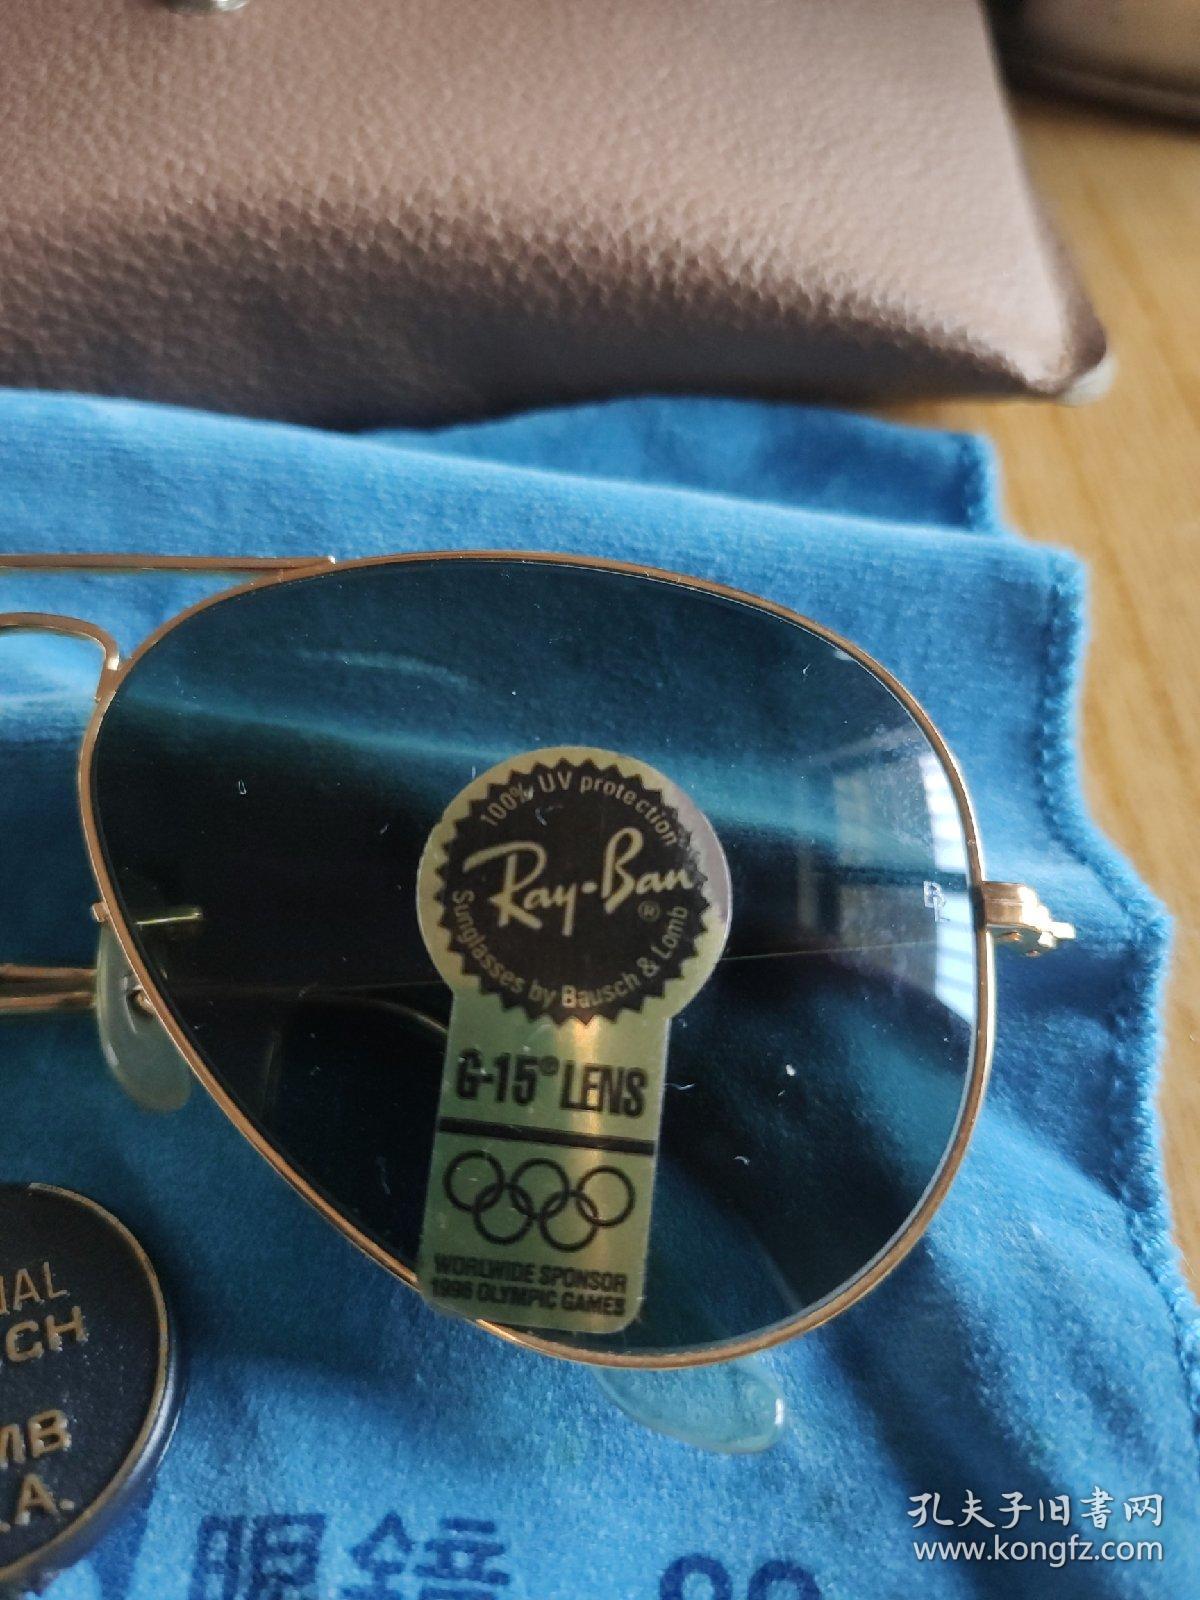 全新雷朋太阳镜  美国产地  1996年亚特兰大奥运会纪念款